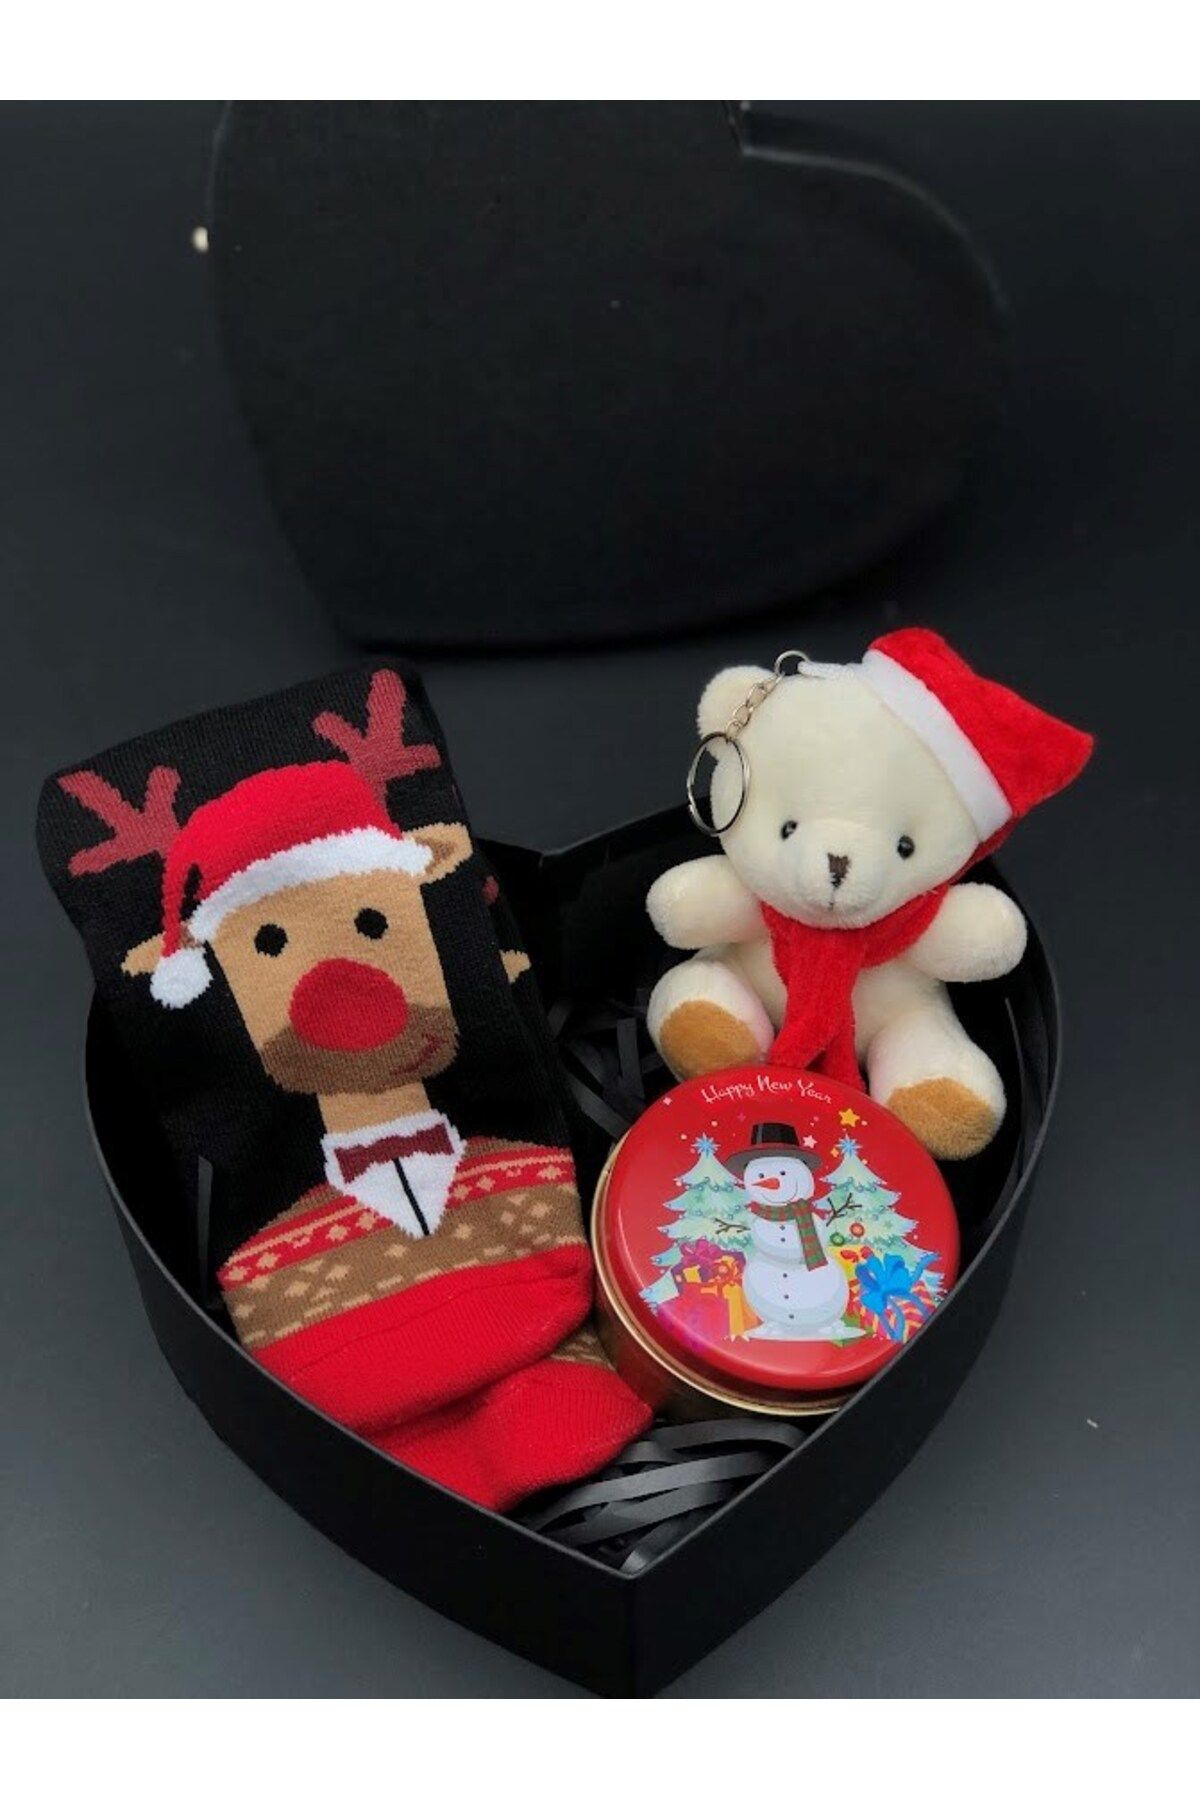 Masalsı Concept kalpli kutu içerisinde en sevimli yılbaşı yeni yıl hediyesi arkadaşa eşe sevgiliye anneye kardeşe